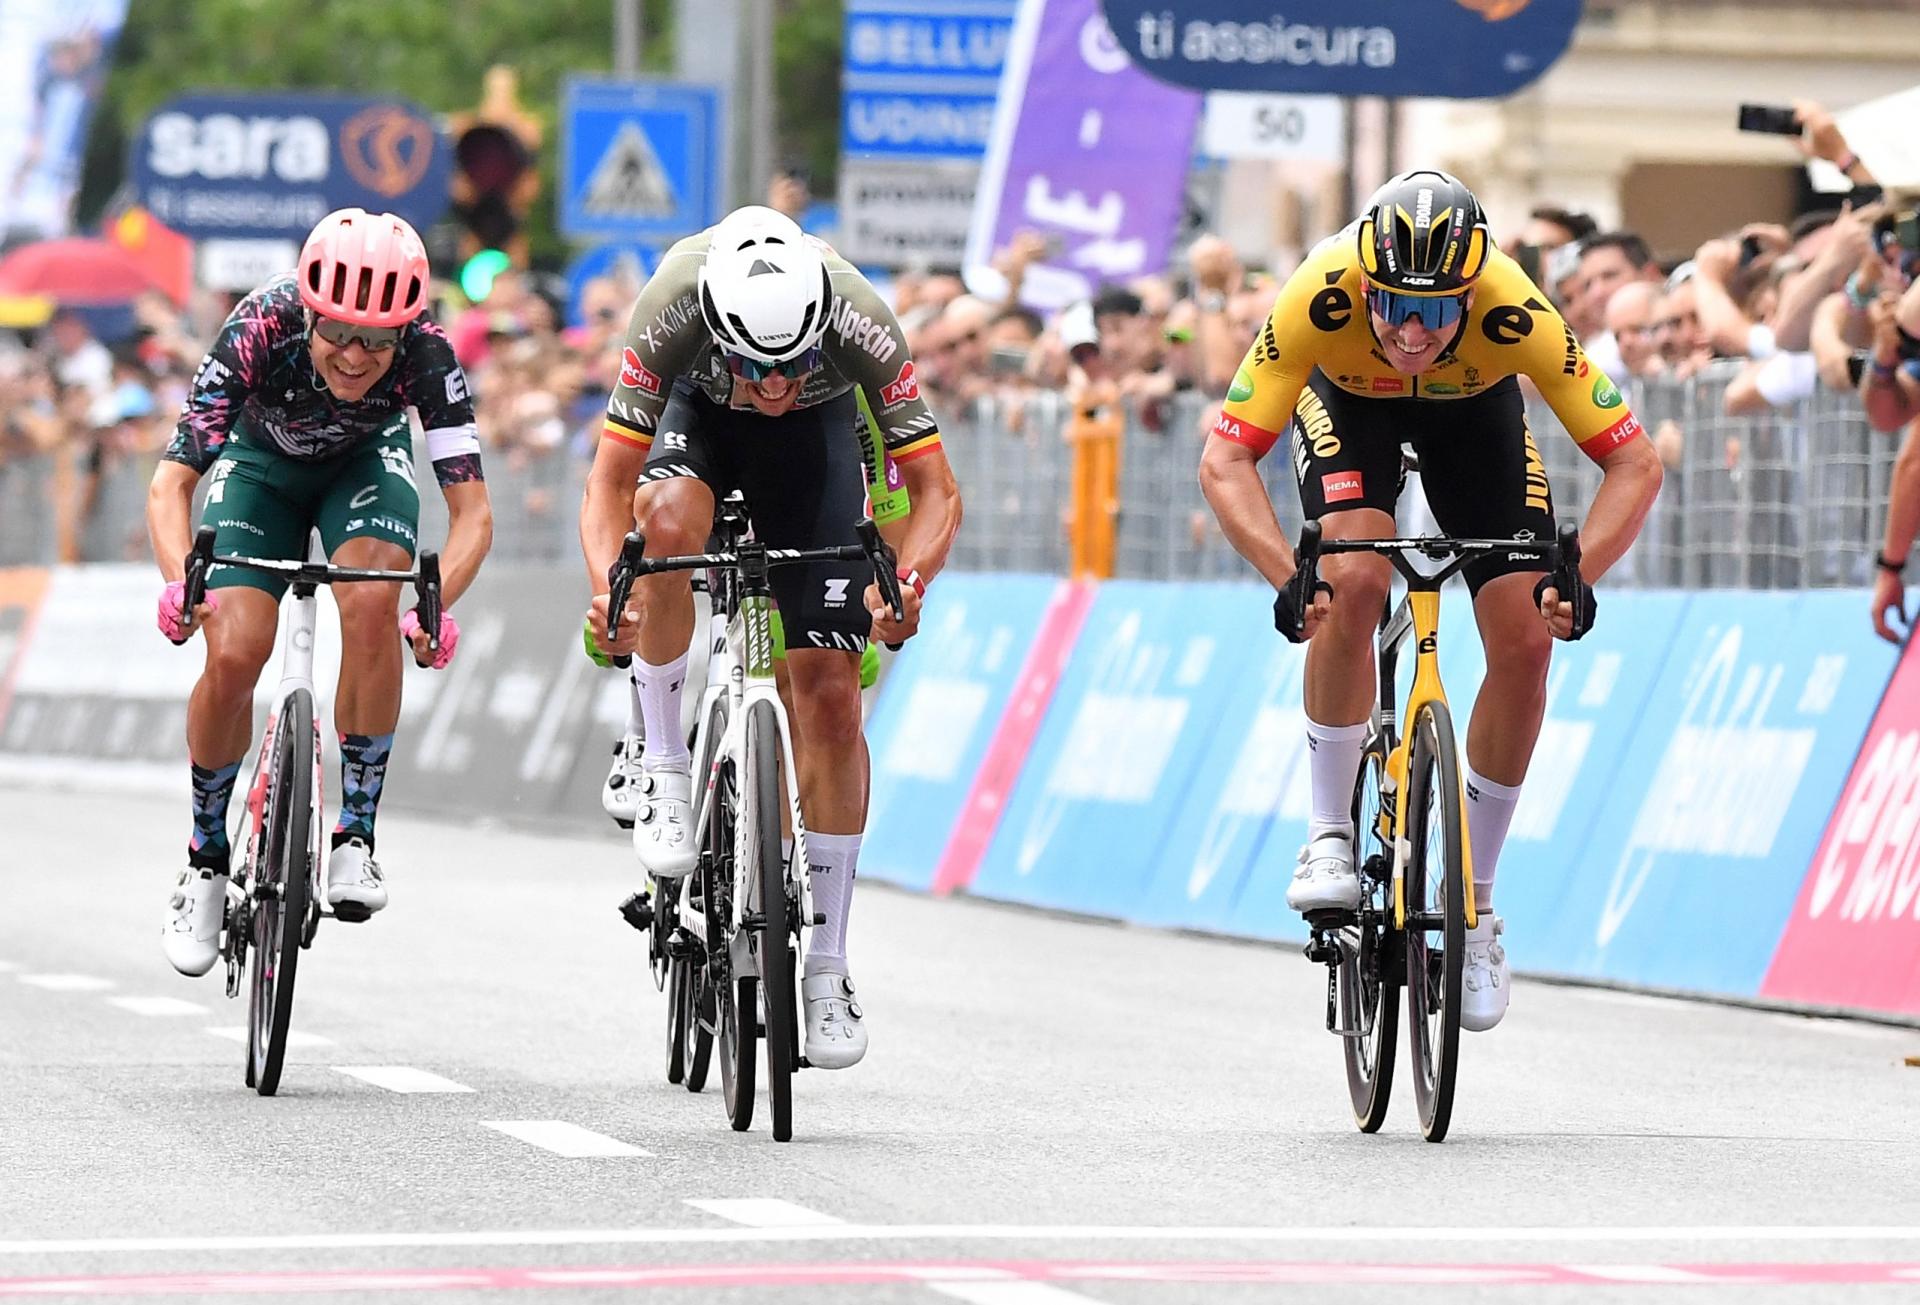 Şosse velosipedində ilin ilk böyük turu olan Giroda mübarizə davam edir